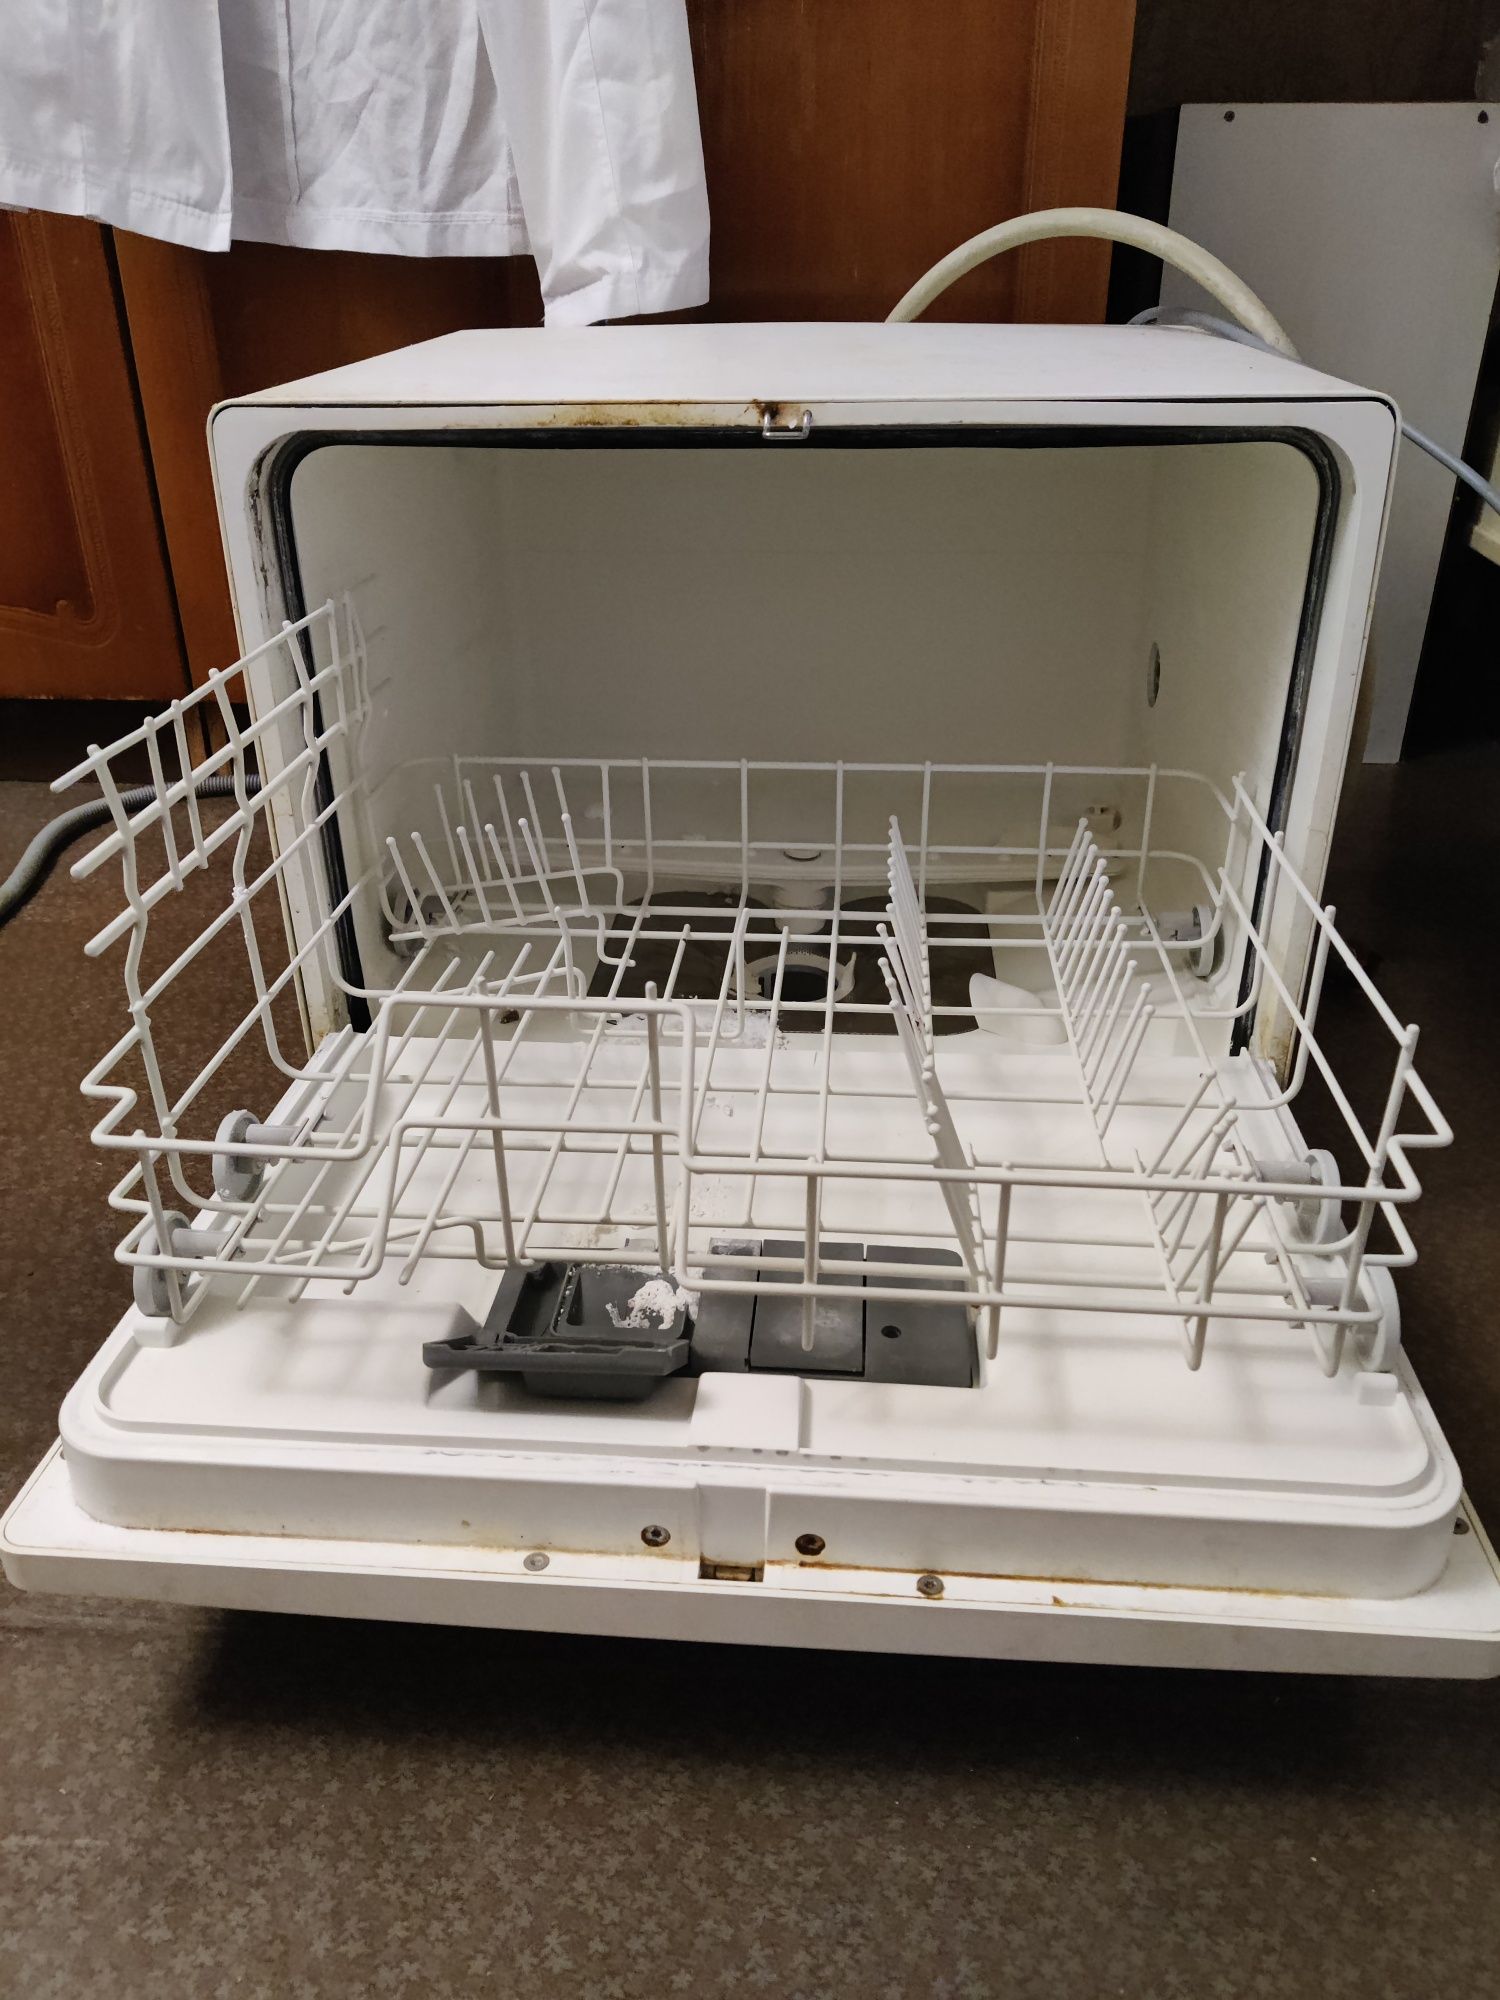 Посудомоечная машина Electrolux ESF 2420